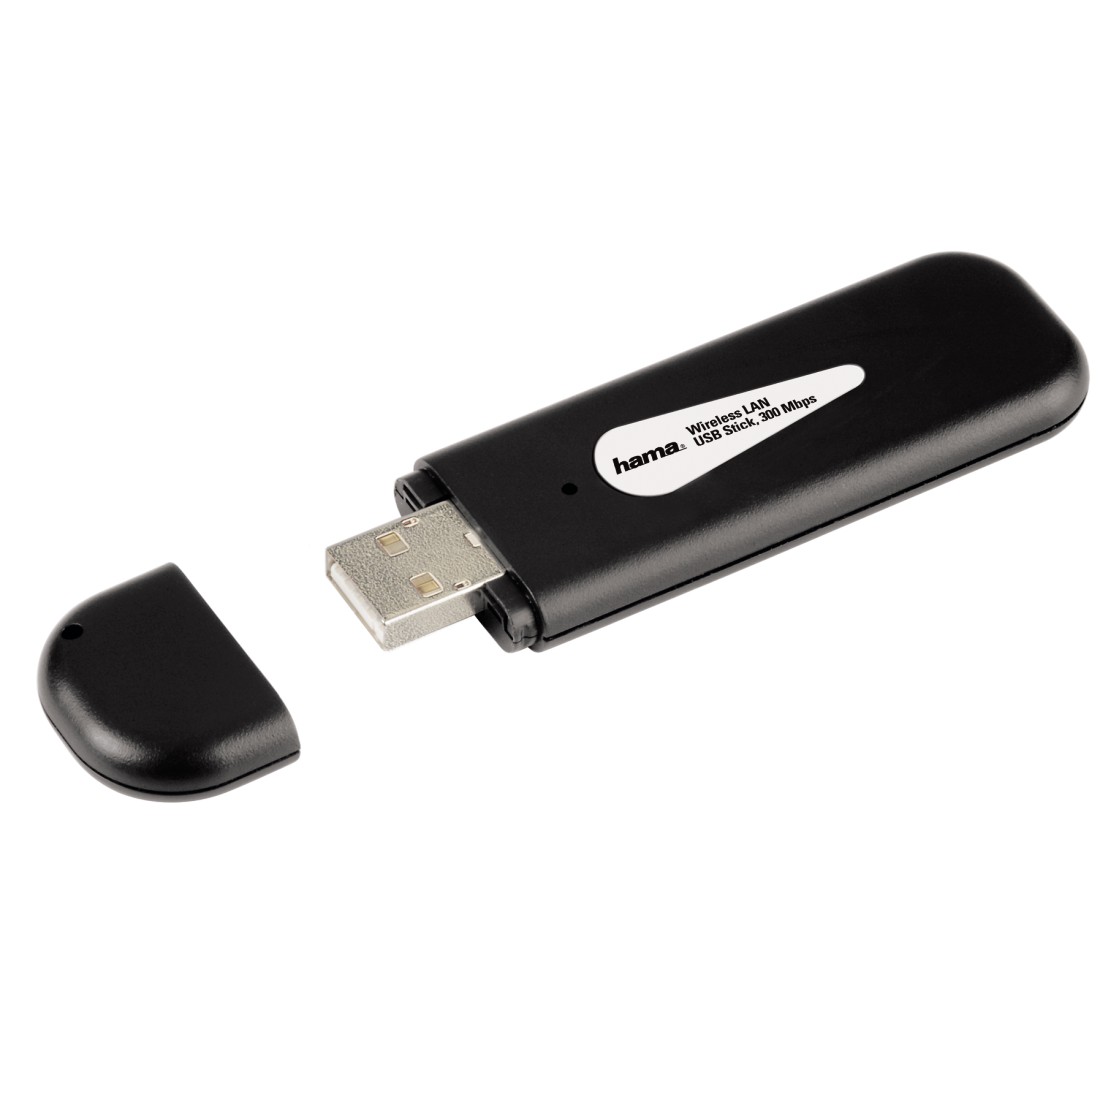 Hama N300 WLAN USB Stick, 2.4 GHz